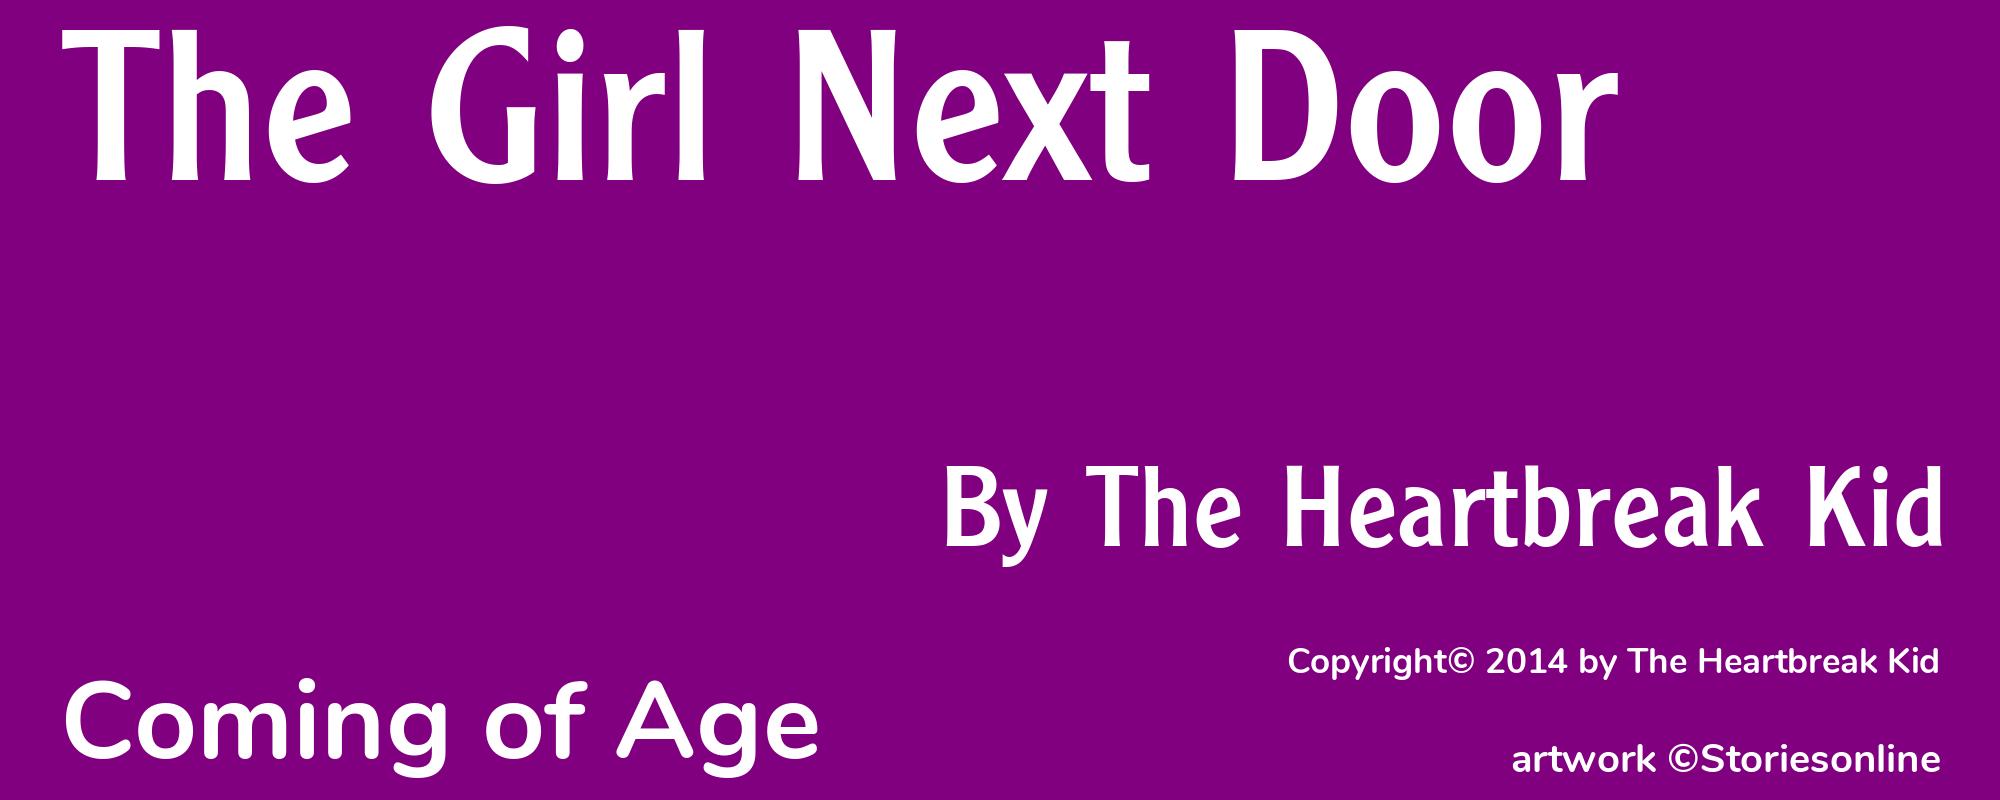 The Girl Next Door - Cover